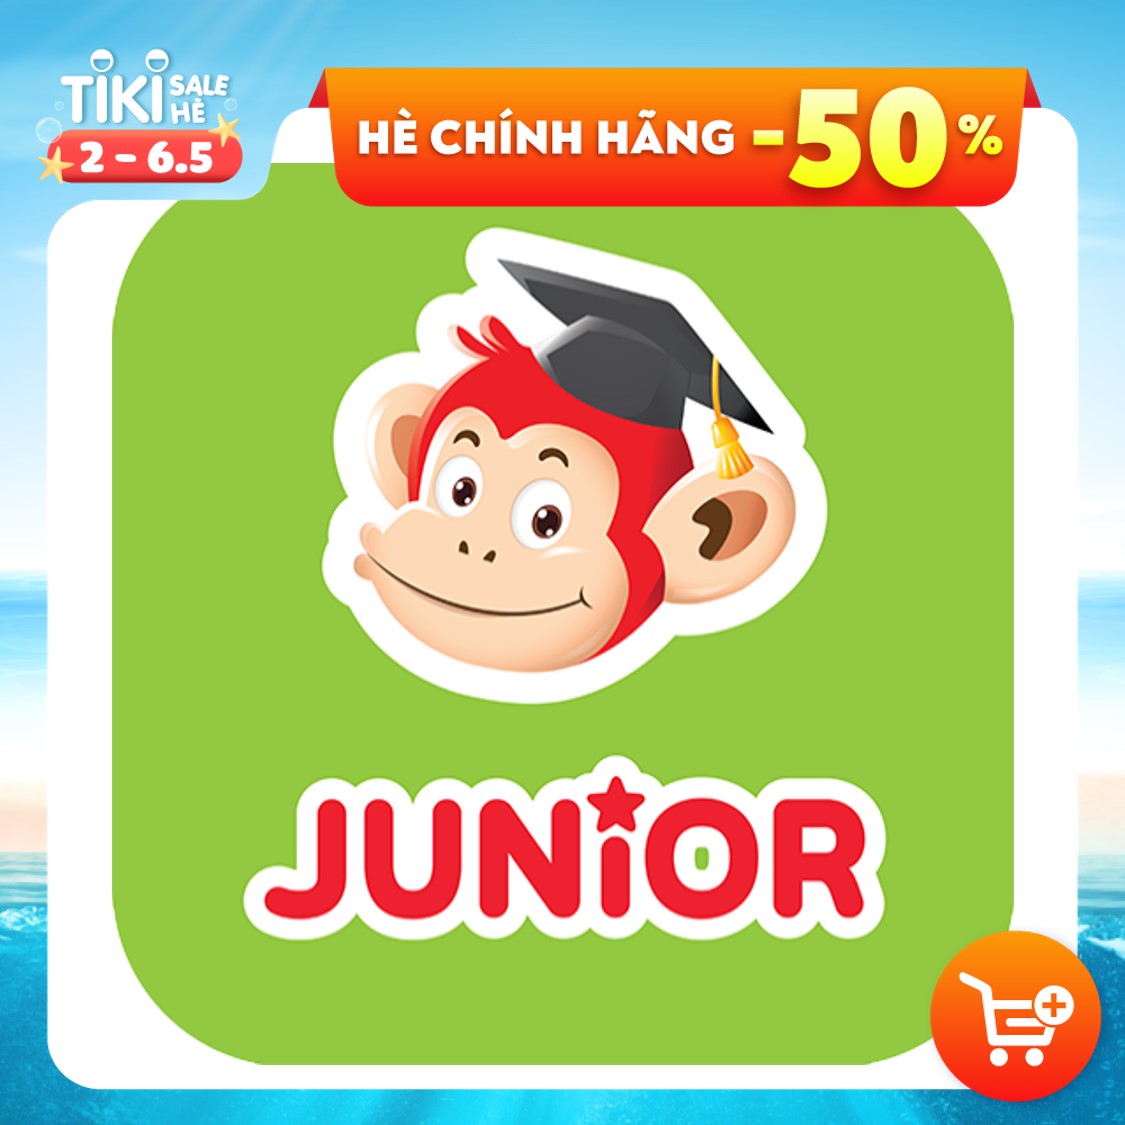 [E-VOUCHER]- Monkey Junior - Tiếng Anh cho trẻ mới bắt đầu (Trọn đời/ 1 năm/ 2 năm) 